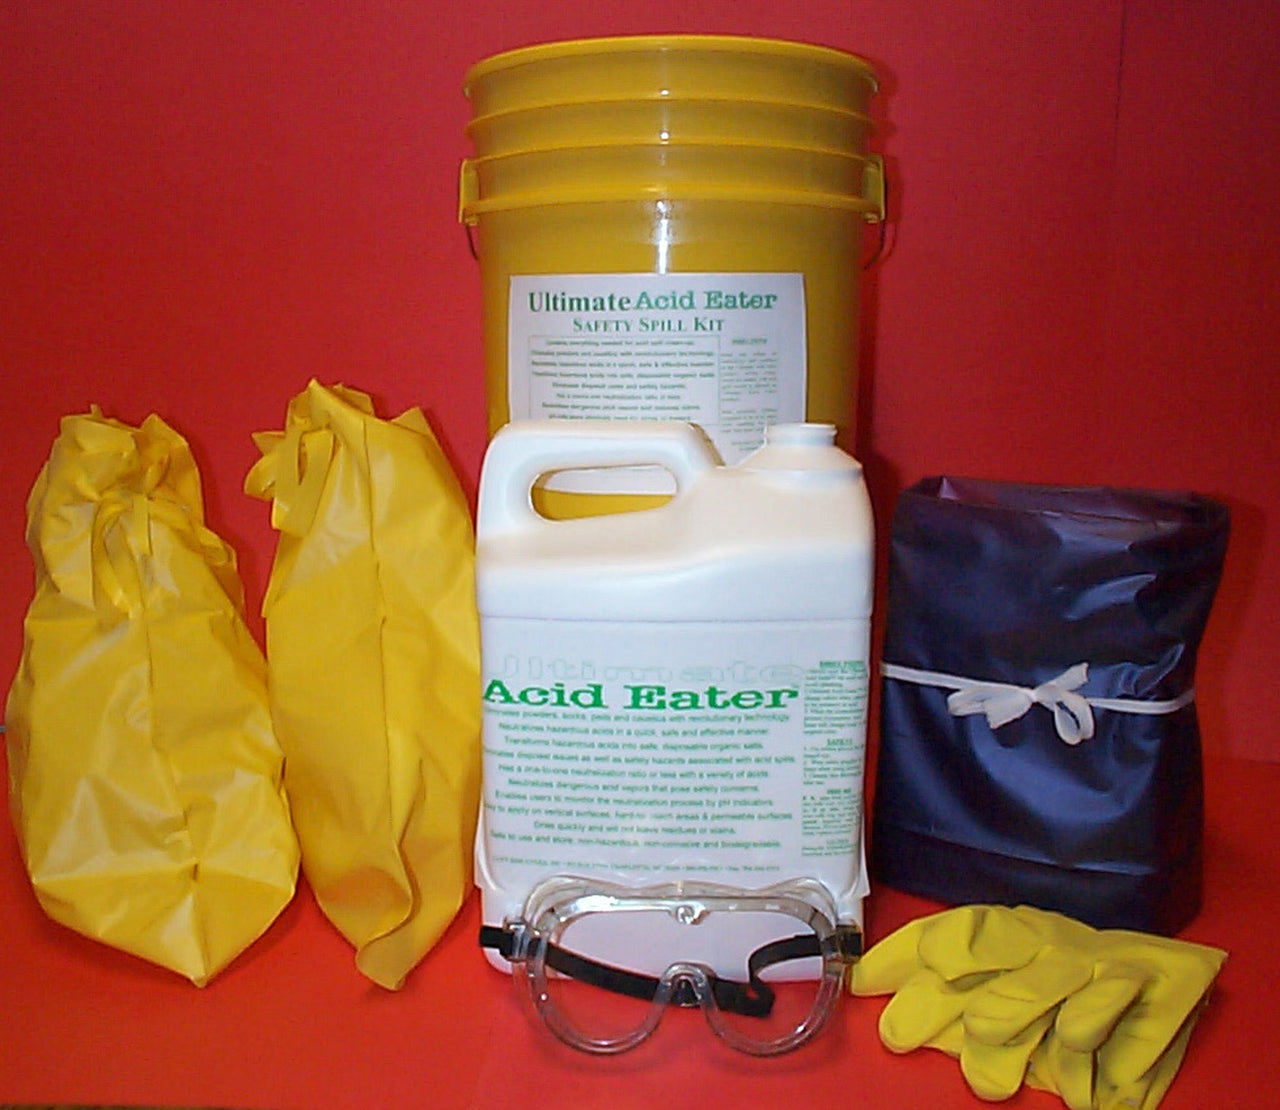 Ultimate Acid Eater Spill Kit